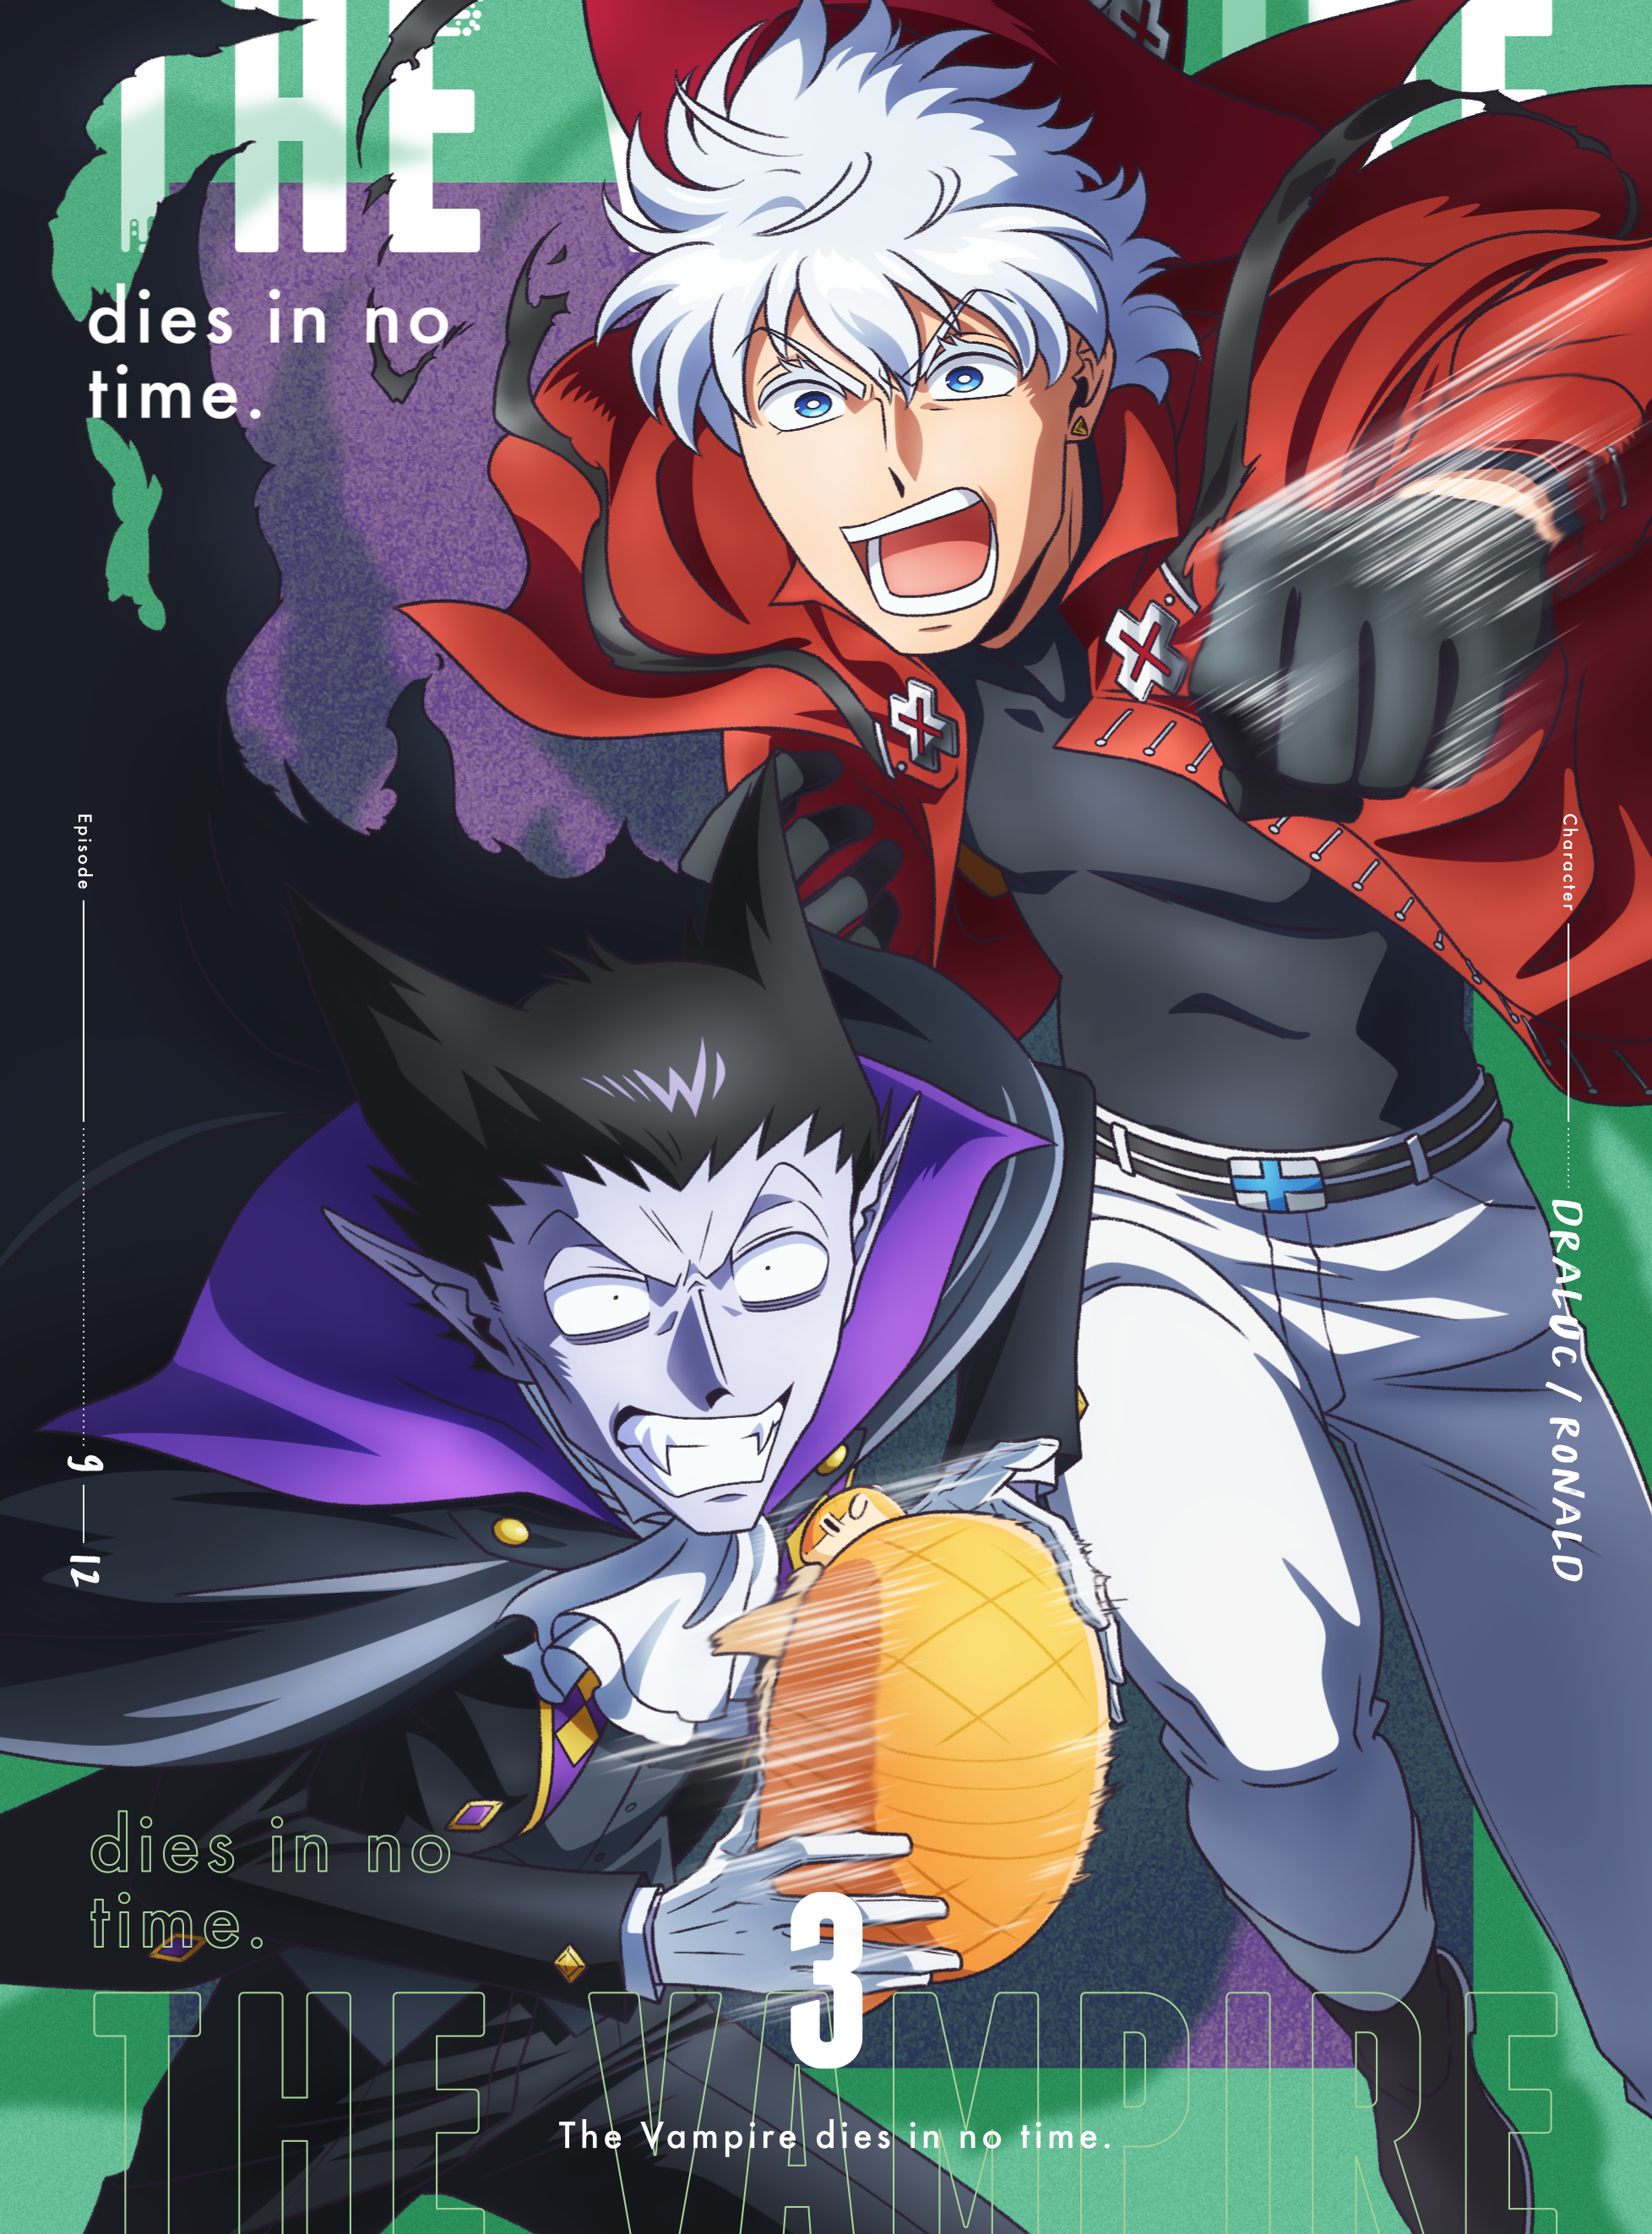 「吸血鬼すぐ死ぬ」BLu-ray&DVD vol.3